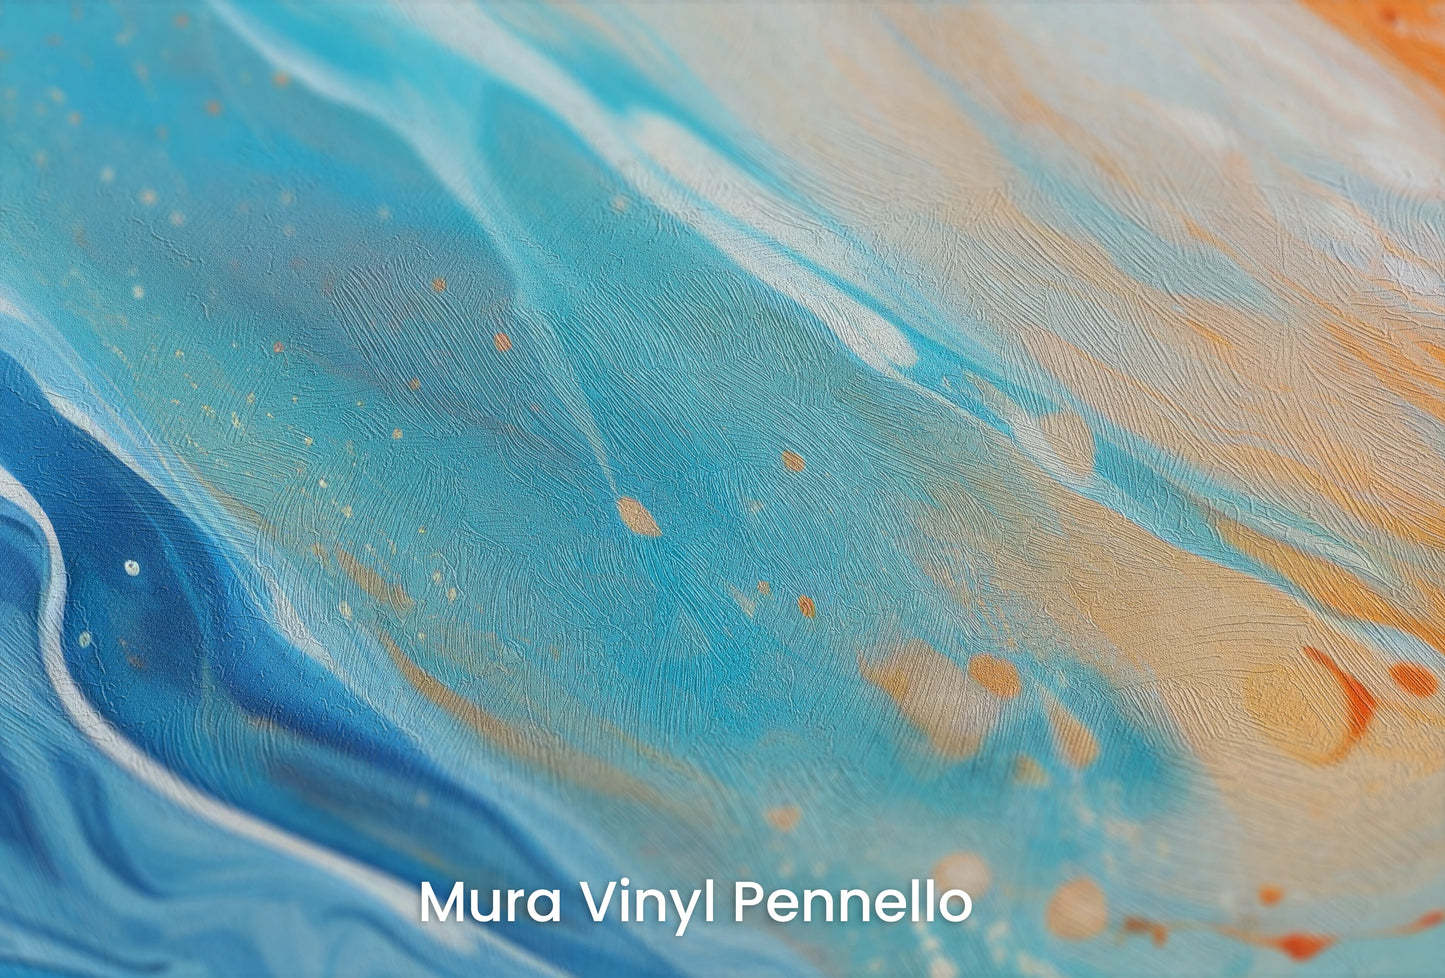 Zbliżenie na artystyczną fototapetę o nazwie Lunar Landscape na podłożu Mura Vinyl Pennello - faktura pociągnięć pędzla malarskiego.